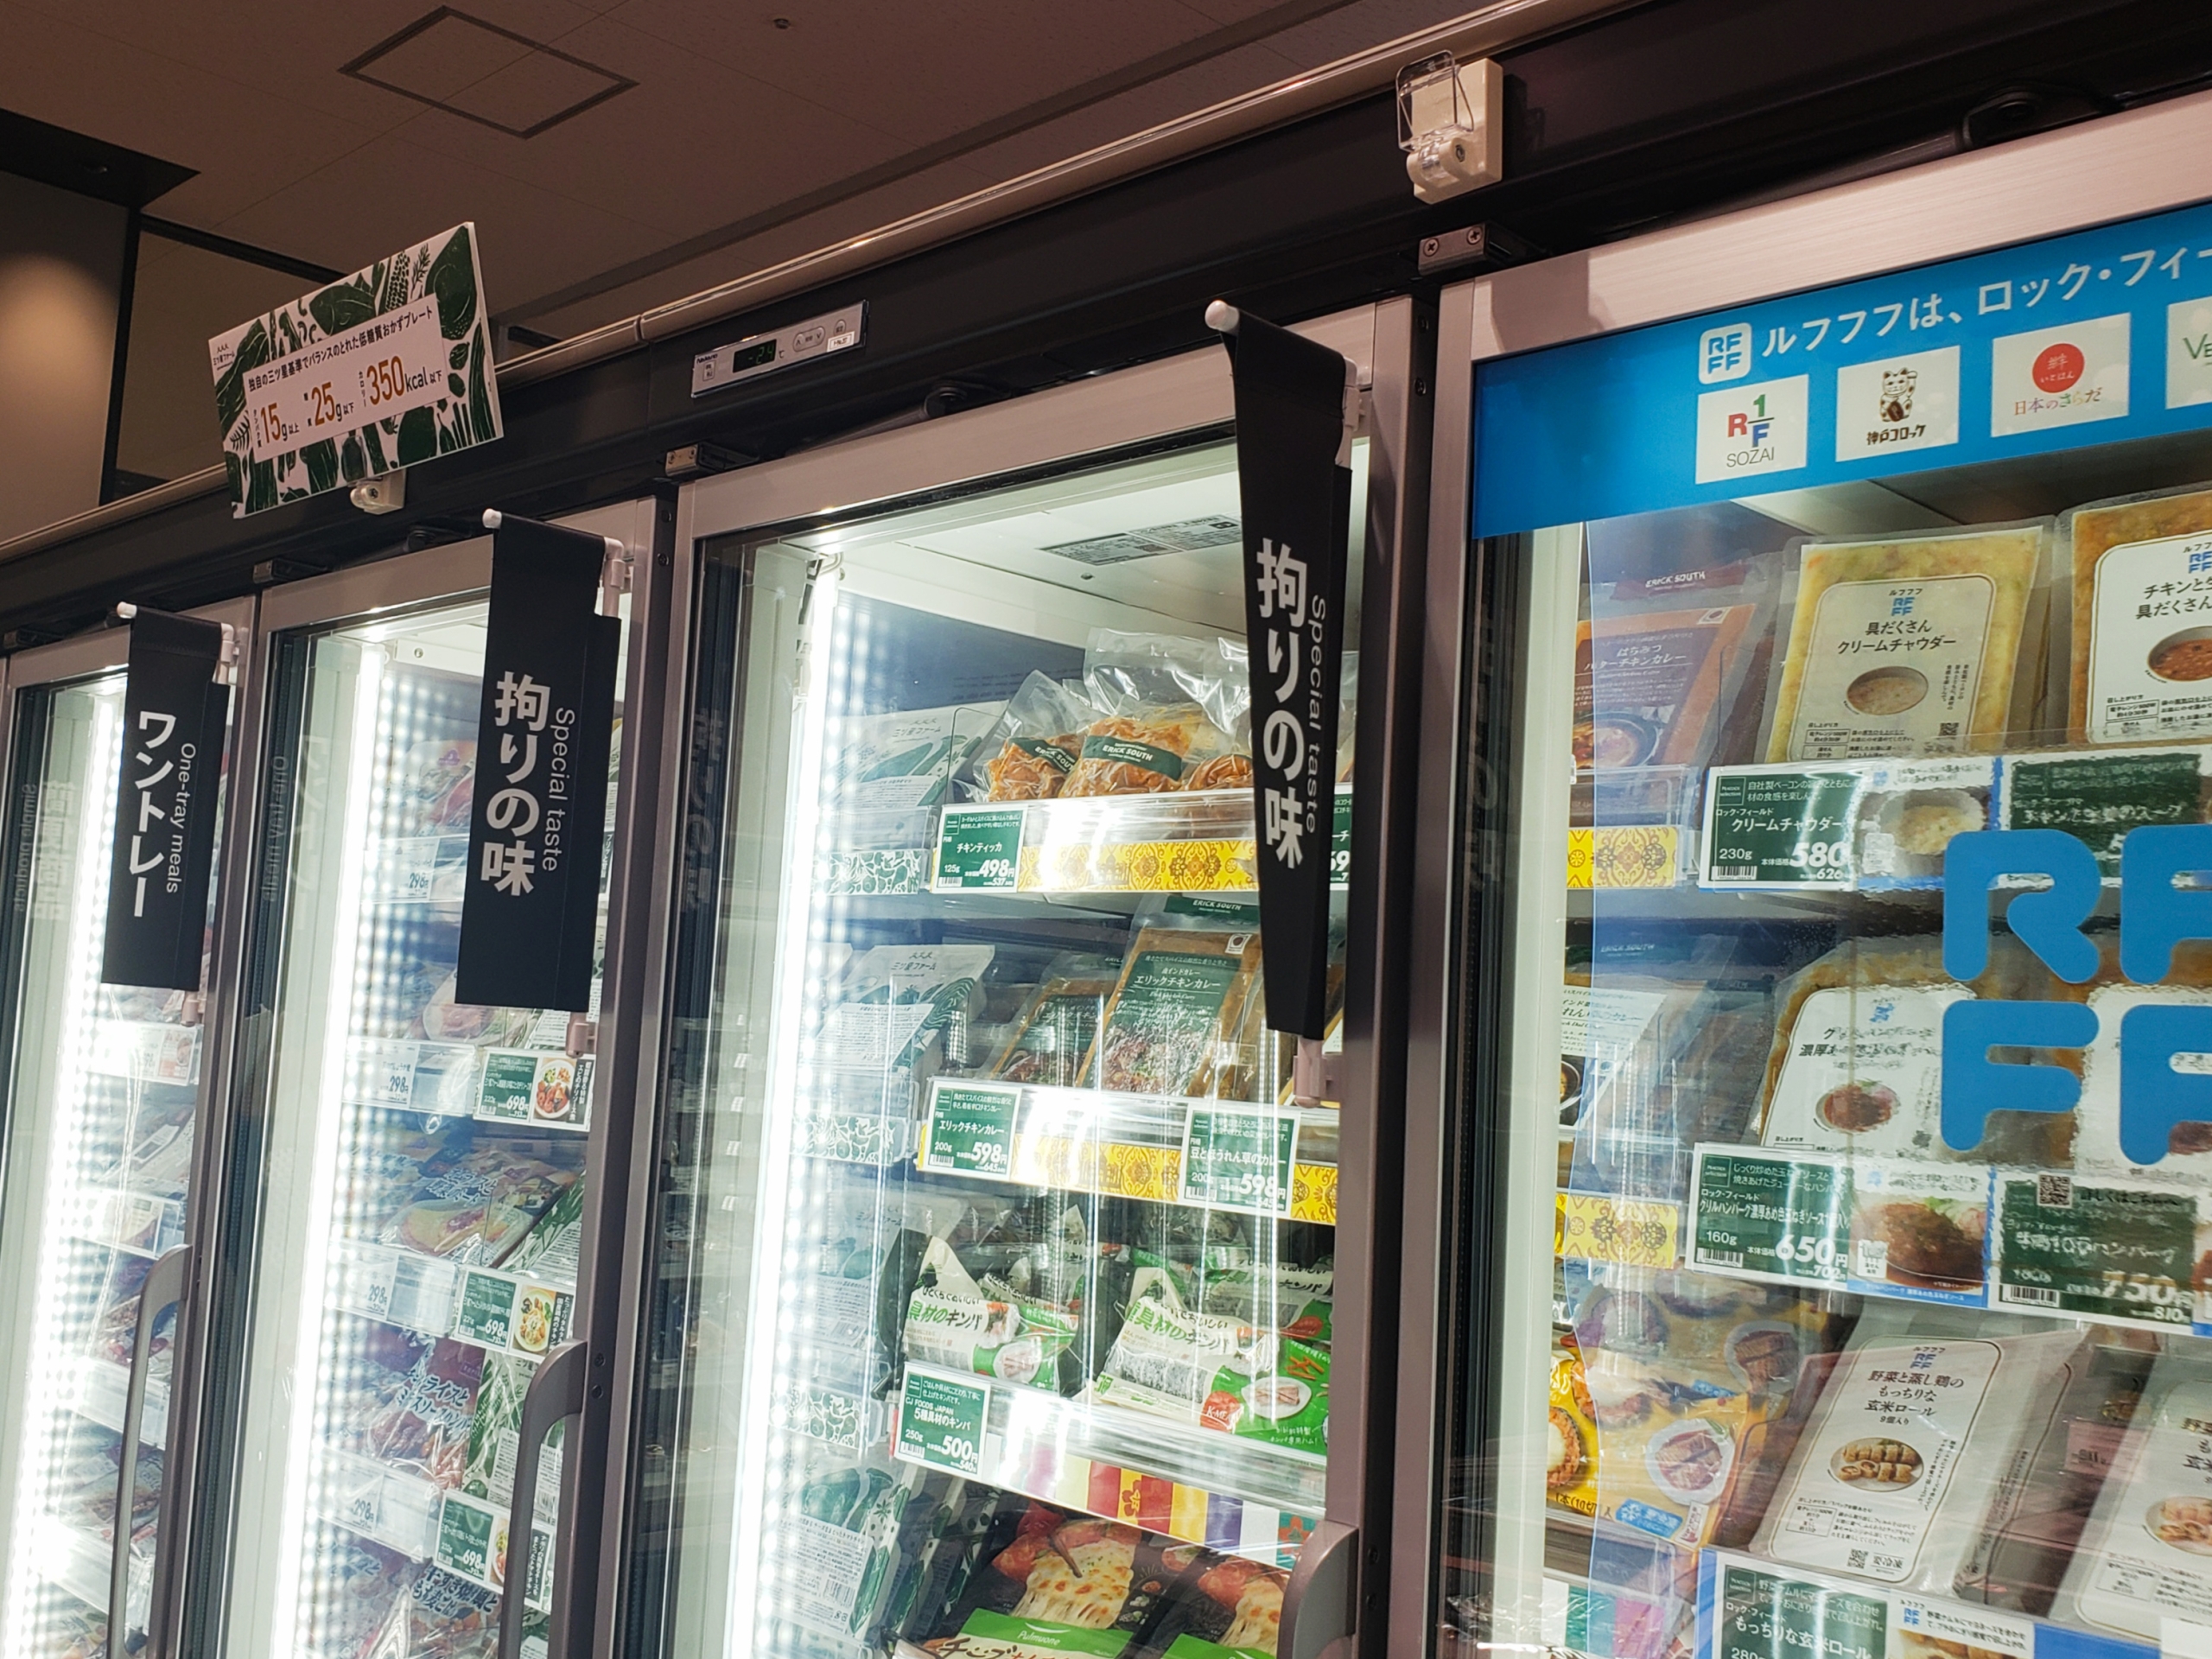 スーパーに設けられた冷凍食品コーナー